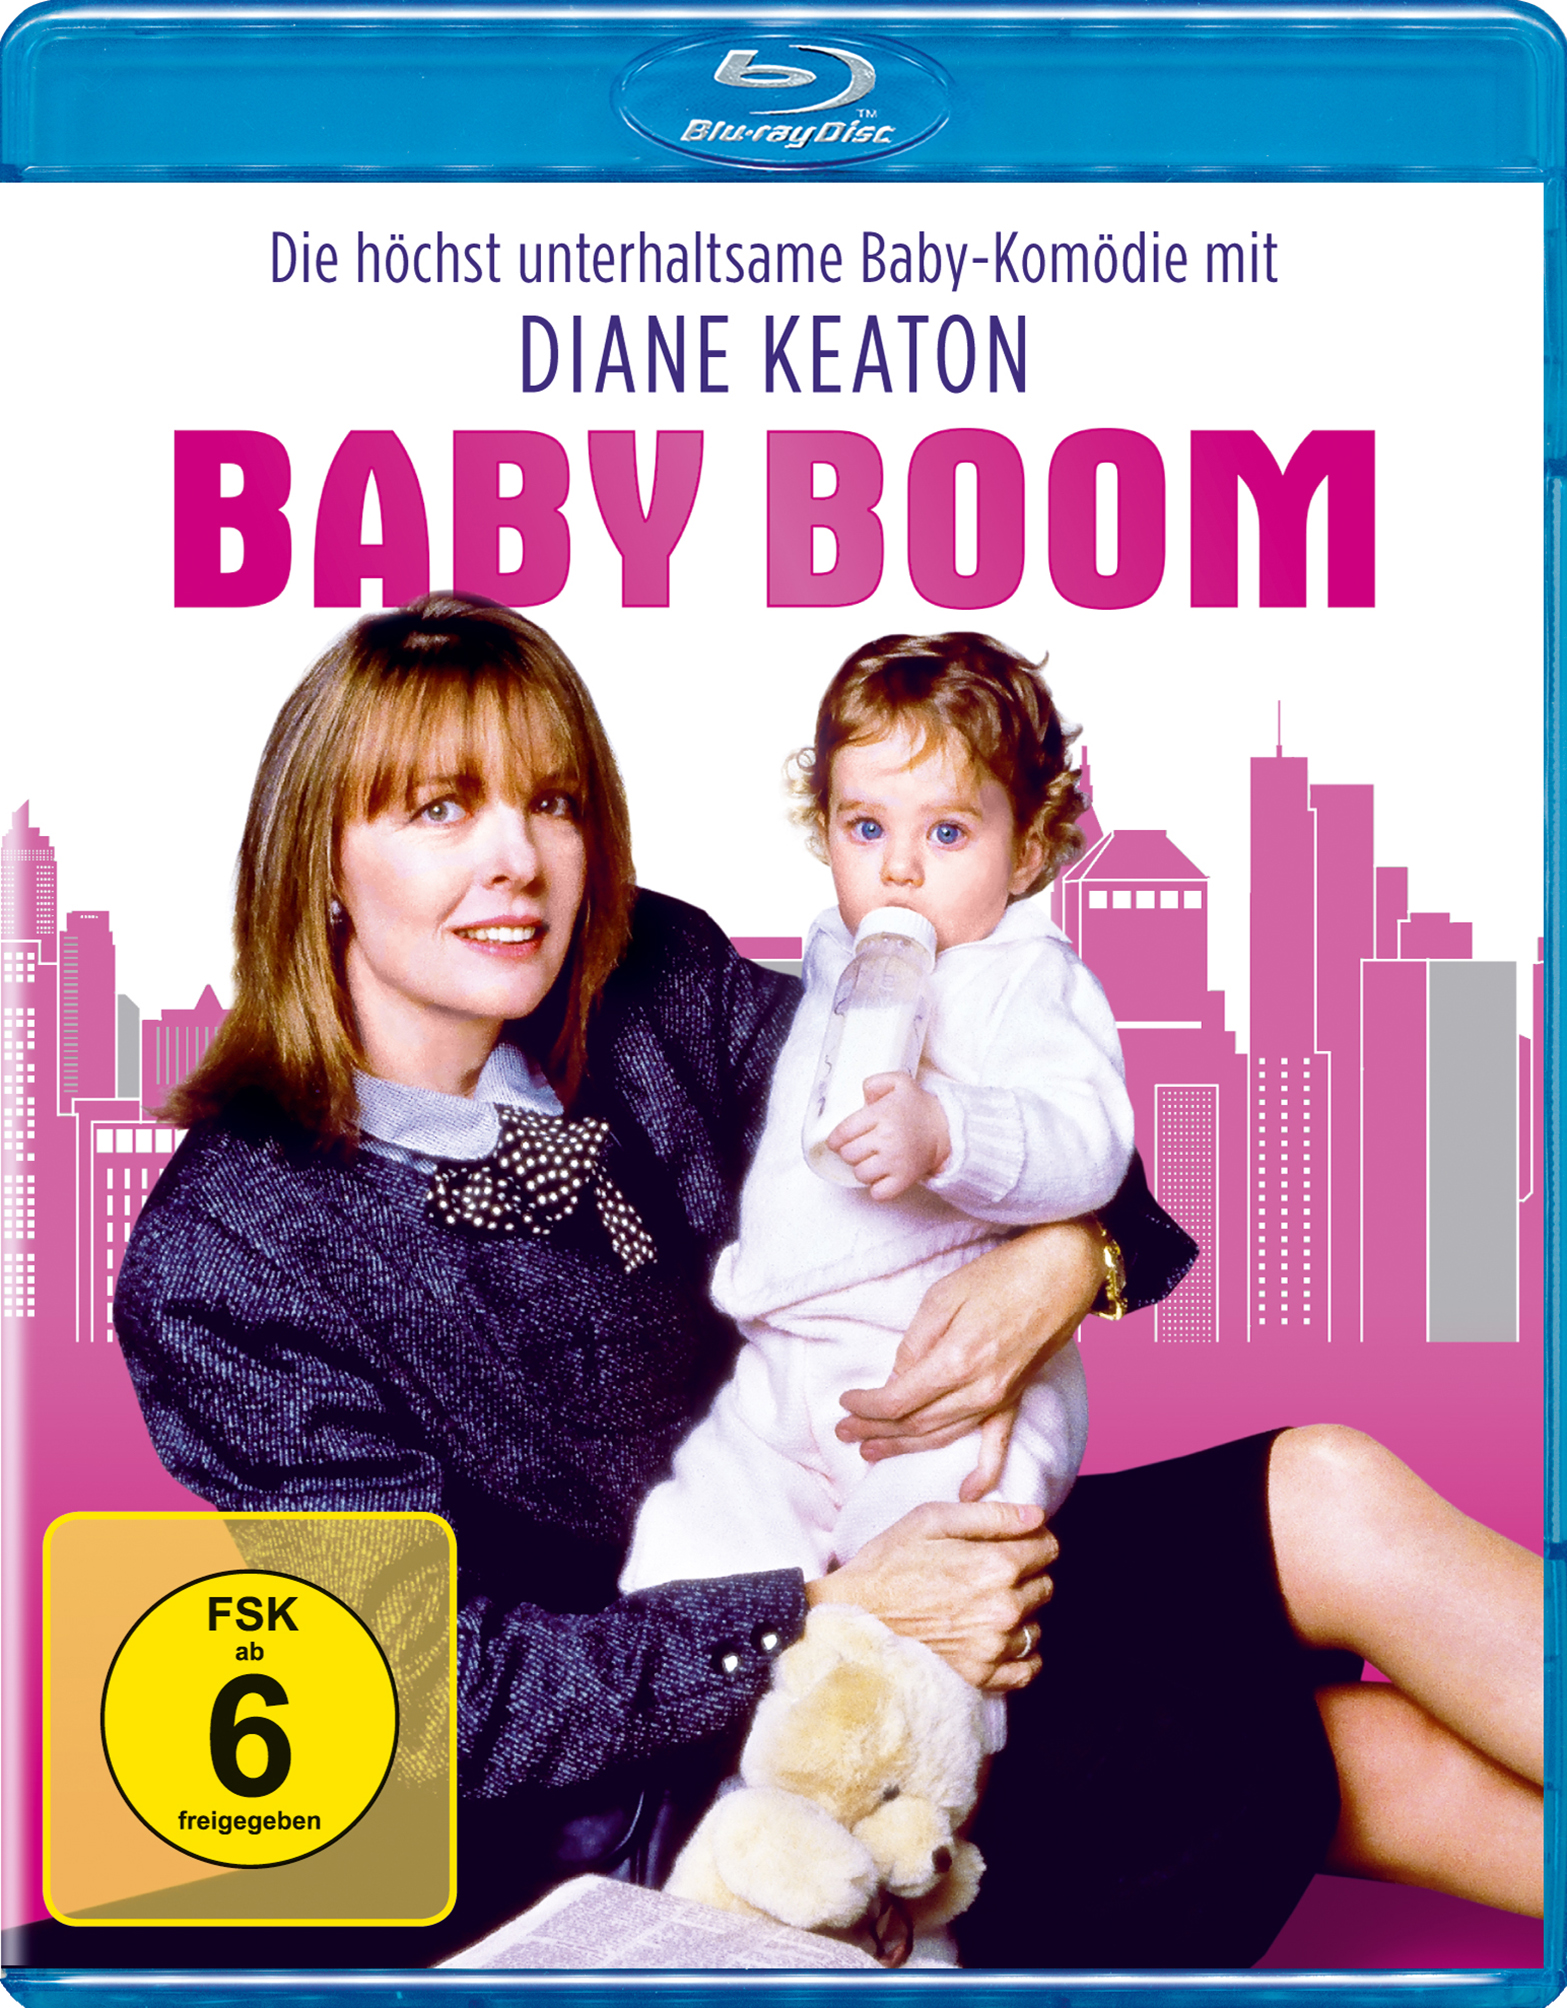 Baby Boom schöne - Bescherung Eine Blu-ray